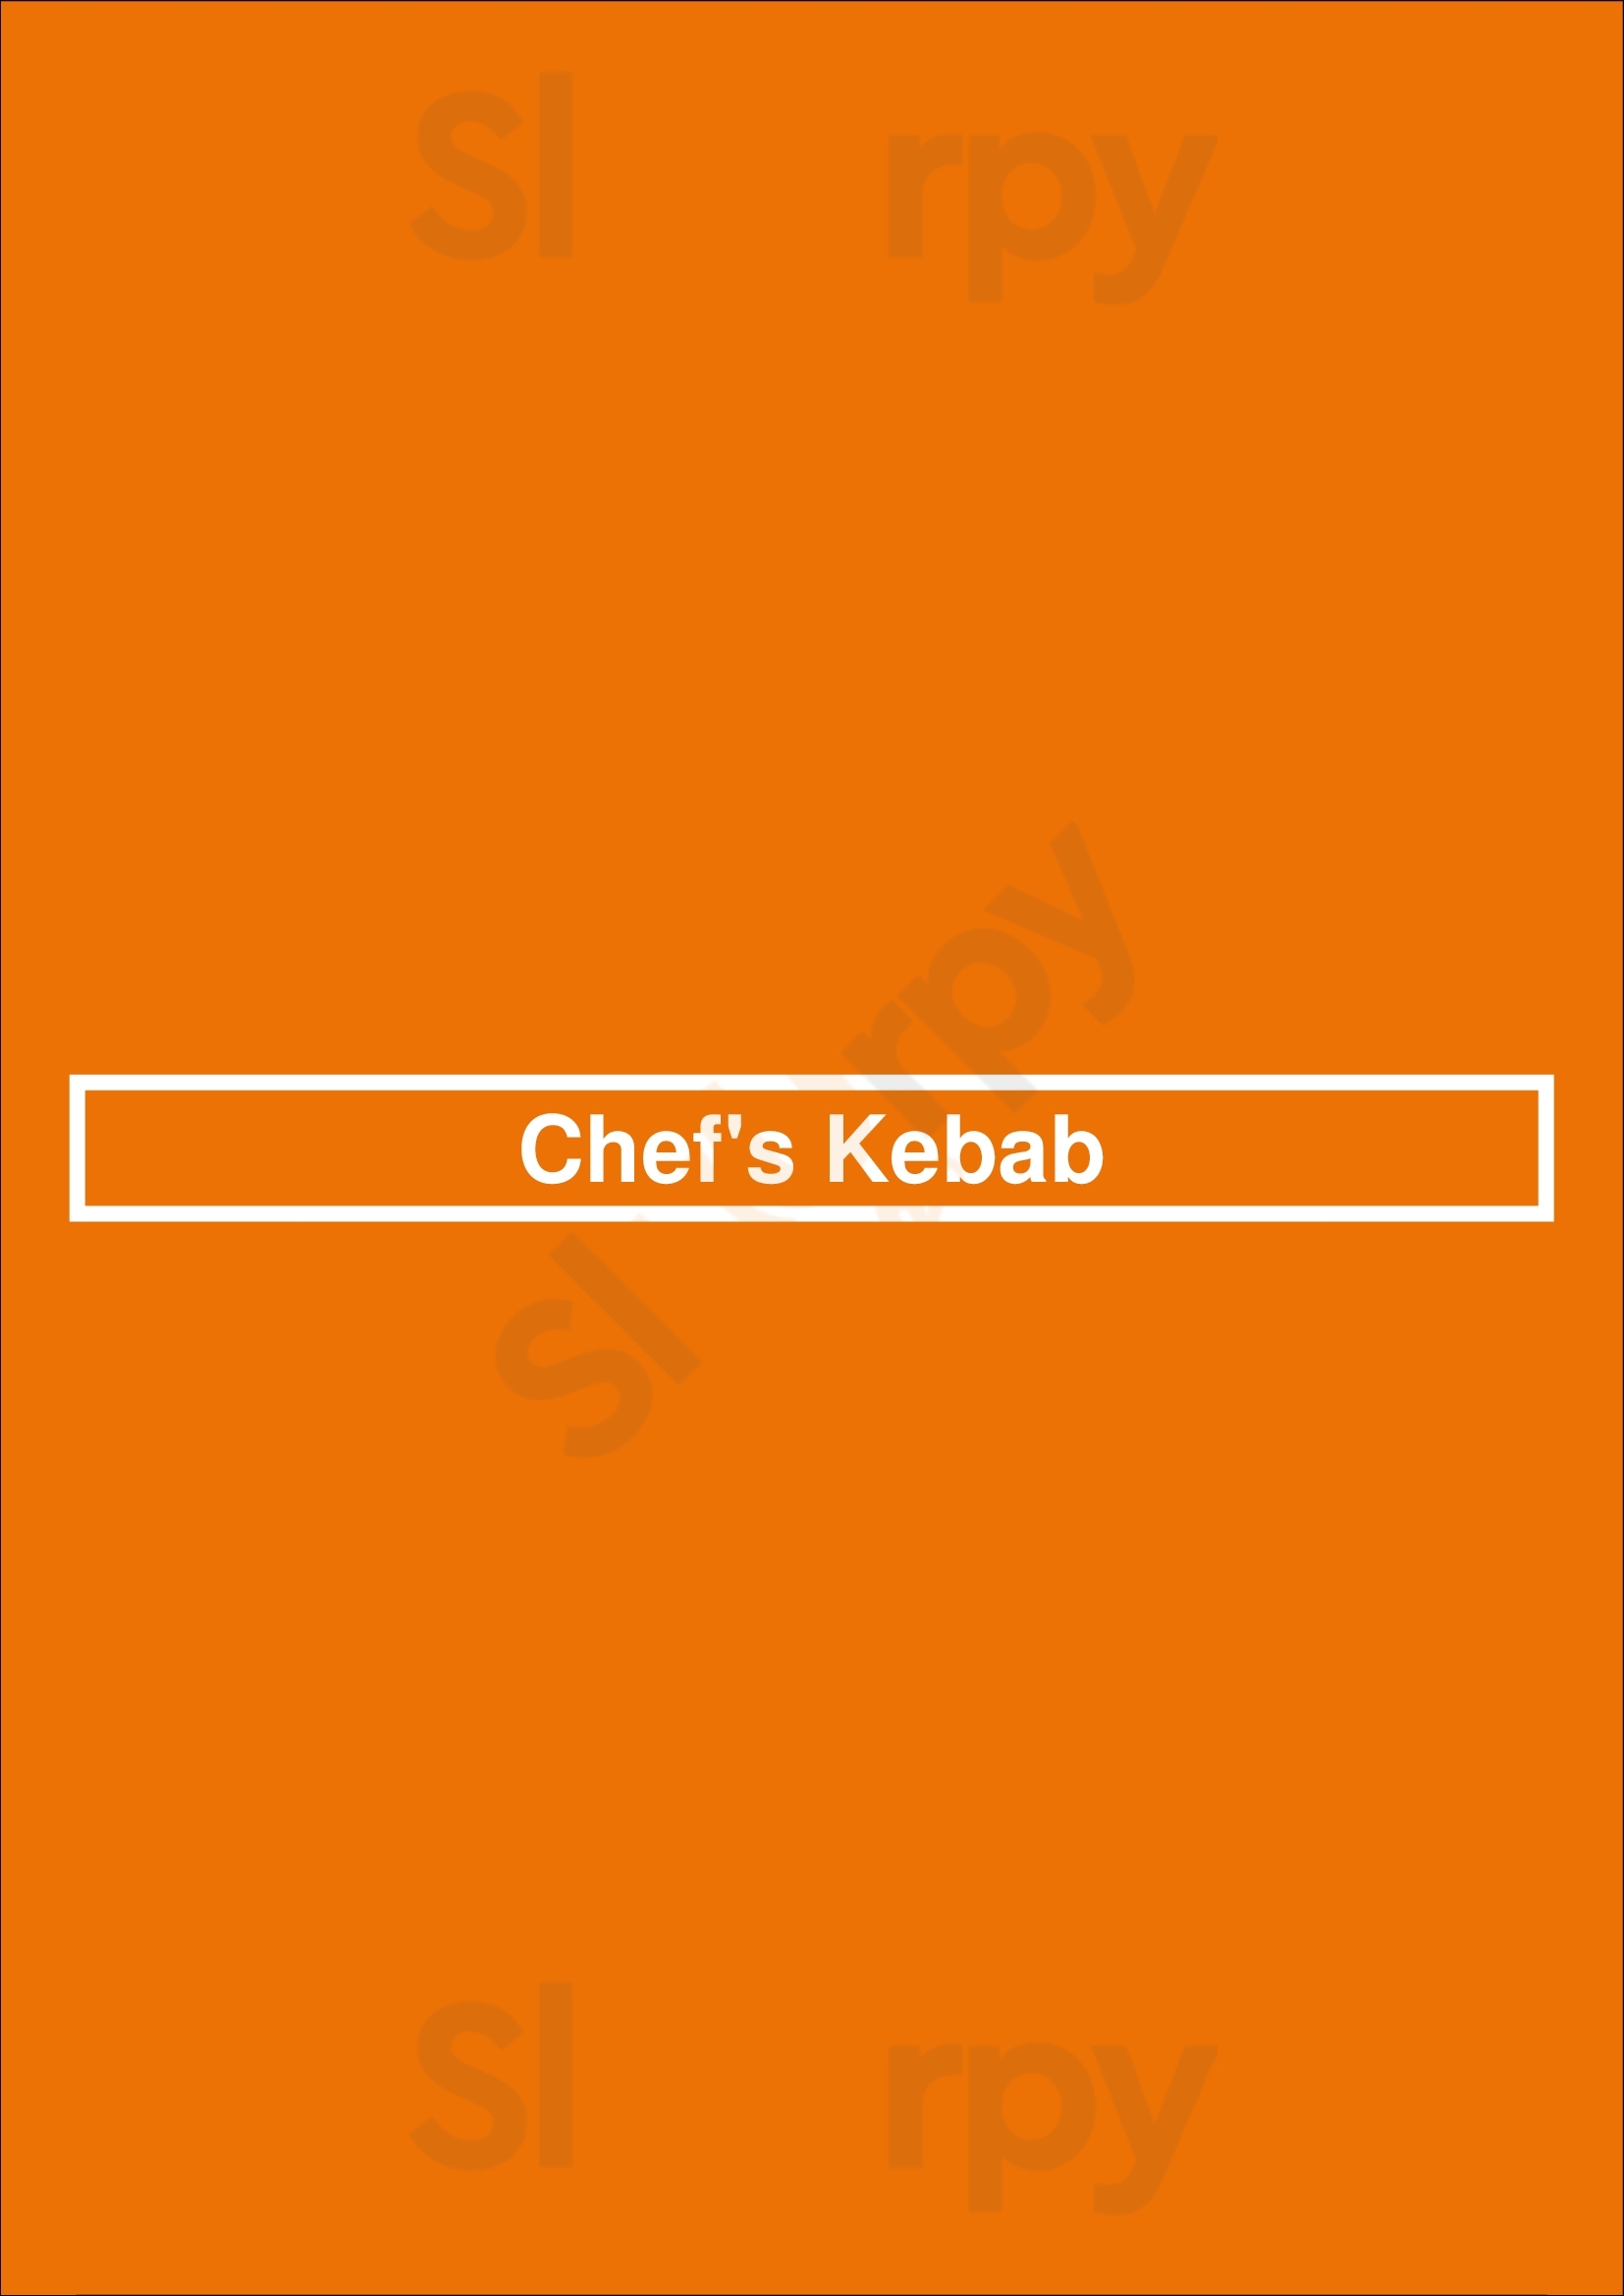 Chef's Kebab Surrey Menu - 1